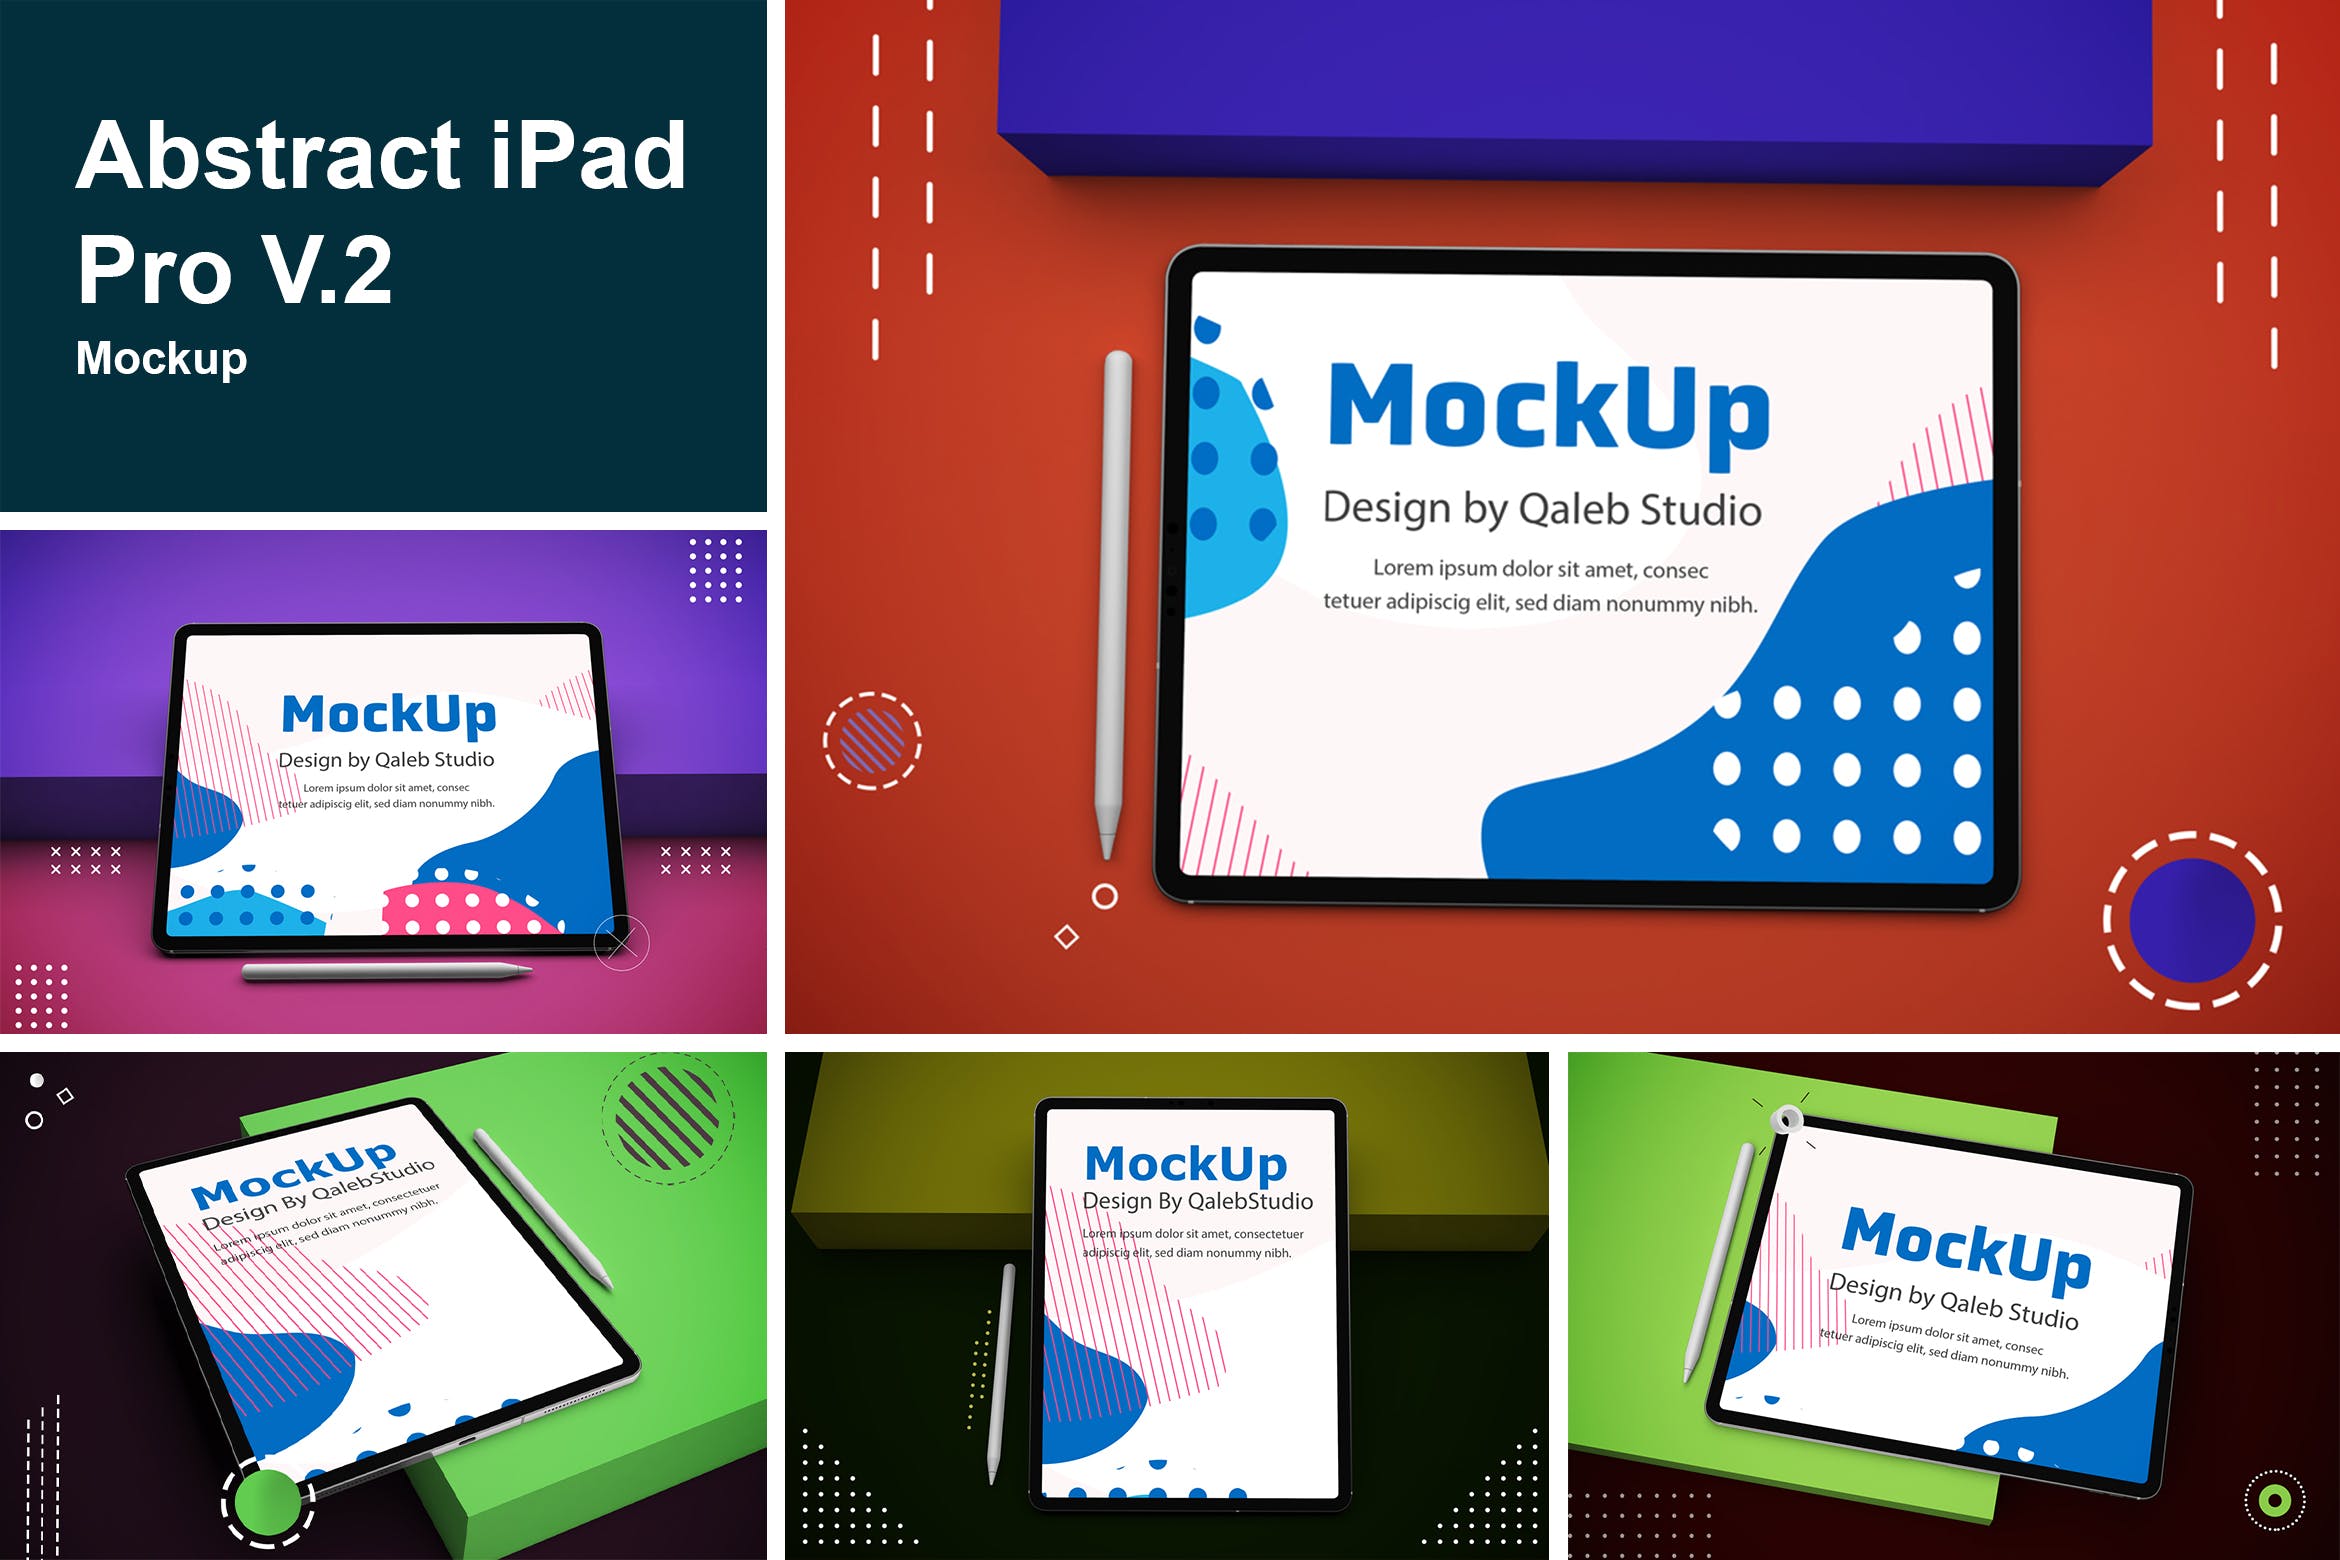 抽象设计风格iPad Pro平板电脑屏幕效果图16设计网精选样机v2 Abstract iPad Pro V.2 Mockup插图